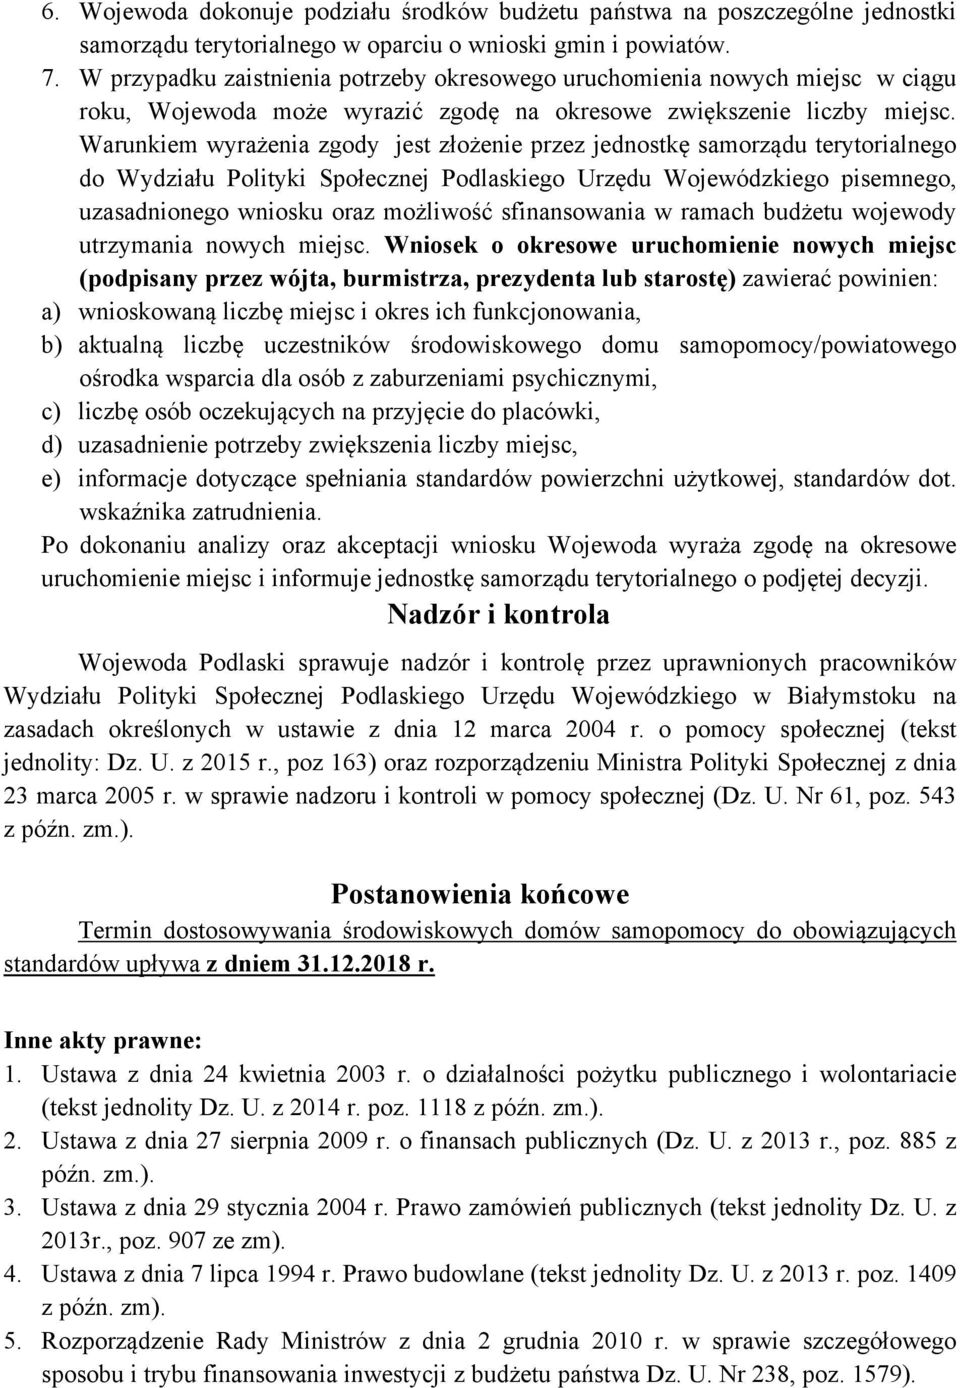 Warunkiem wyrażenia zgody jest złożenie przez jednostkę samorządu terytorialnego do Wydziału Polityki Społecznej Podlaskiego Urzędu Wojewódzkiego pisemnego, uzasadnionego wniosku oraz możliwość